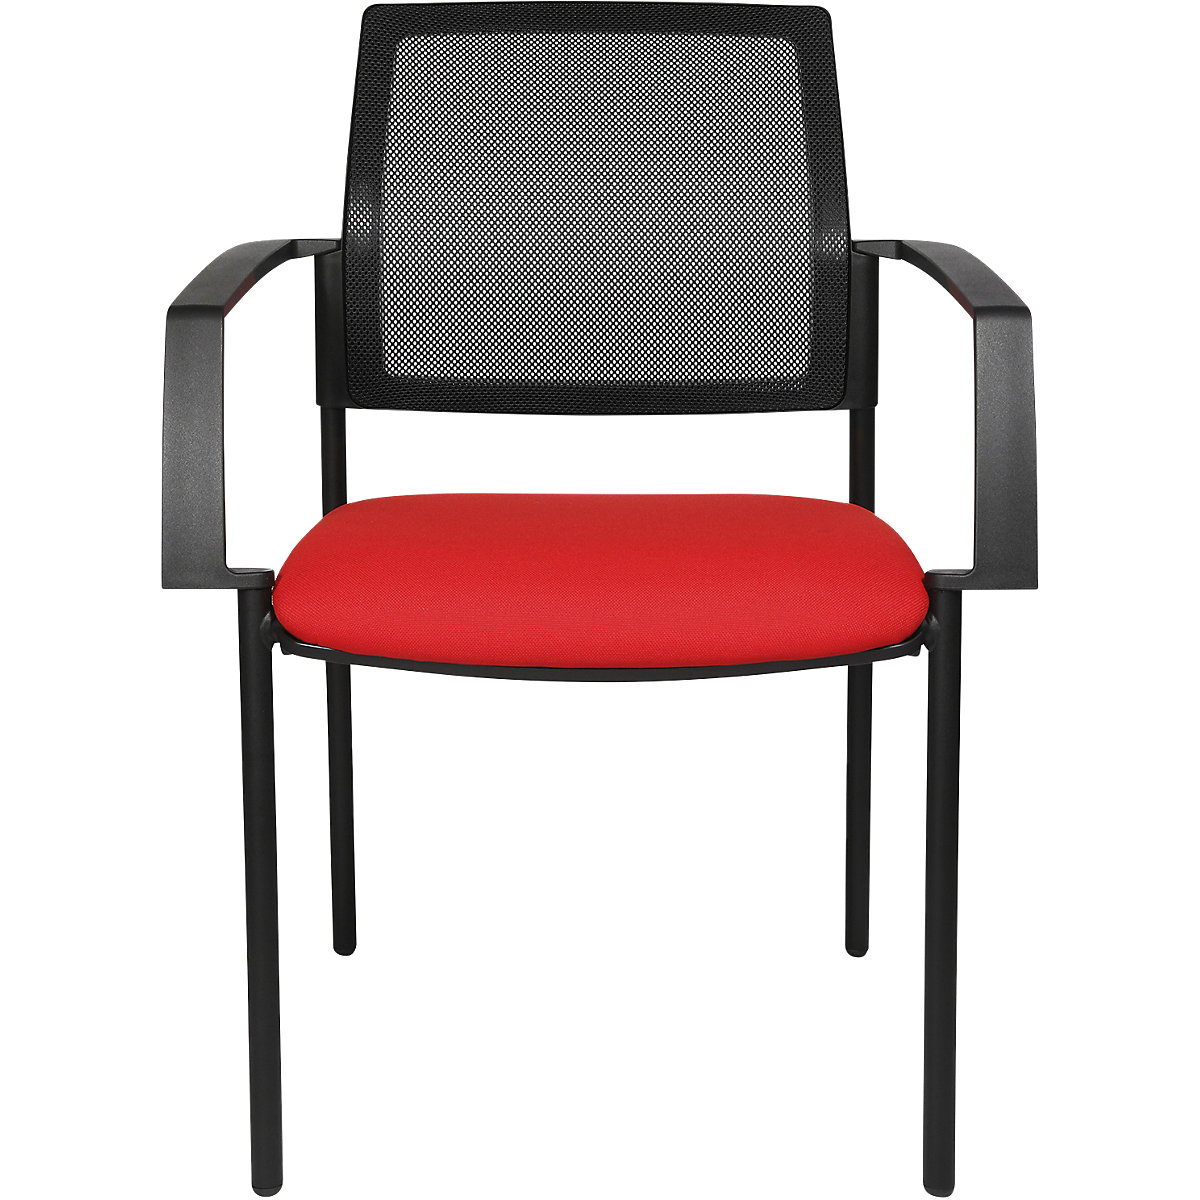 Složiva stolica s mrežastim naslonom – Topstar, 4 noge, pak. 2 kom., sjedalo u crvenoj boji, postolje u crnoj boji